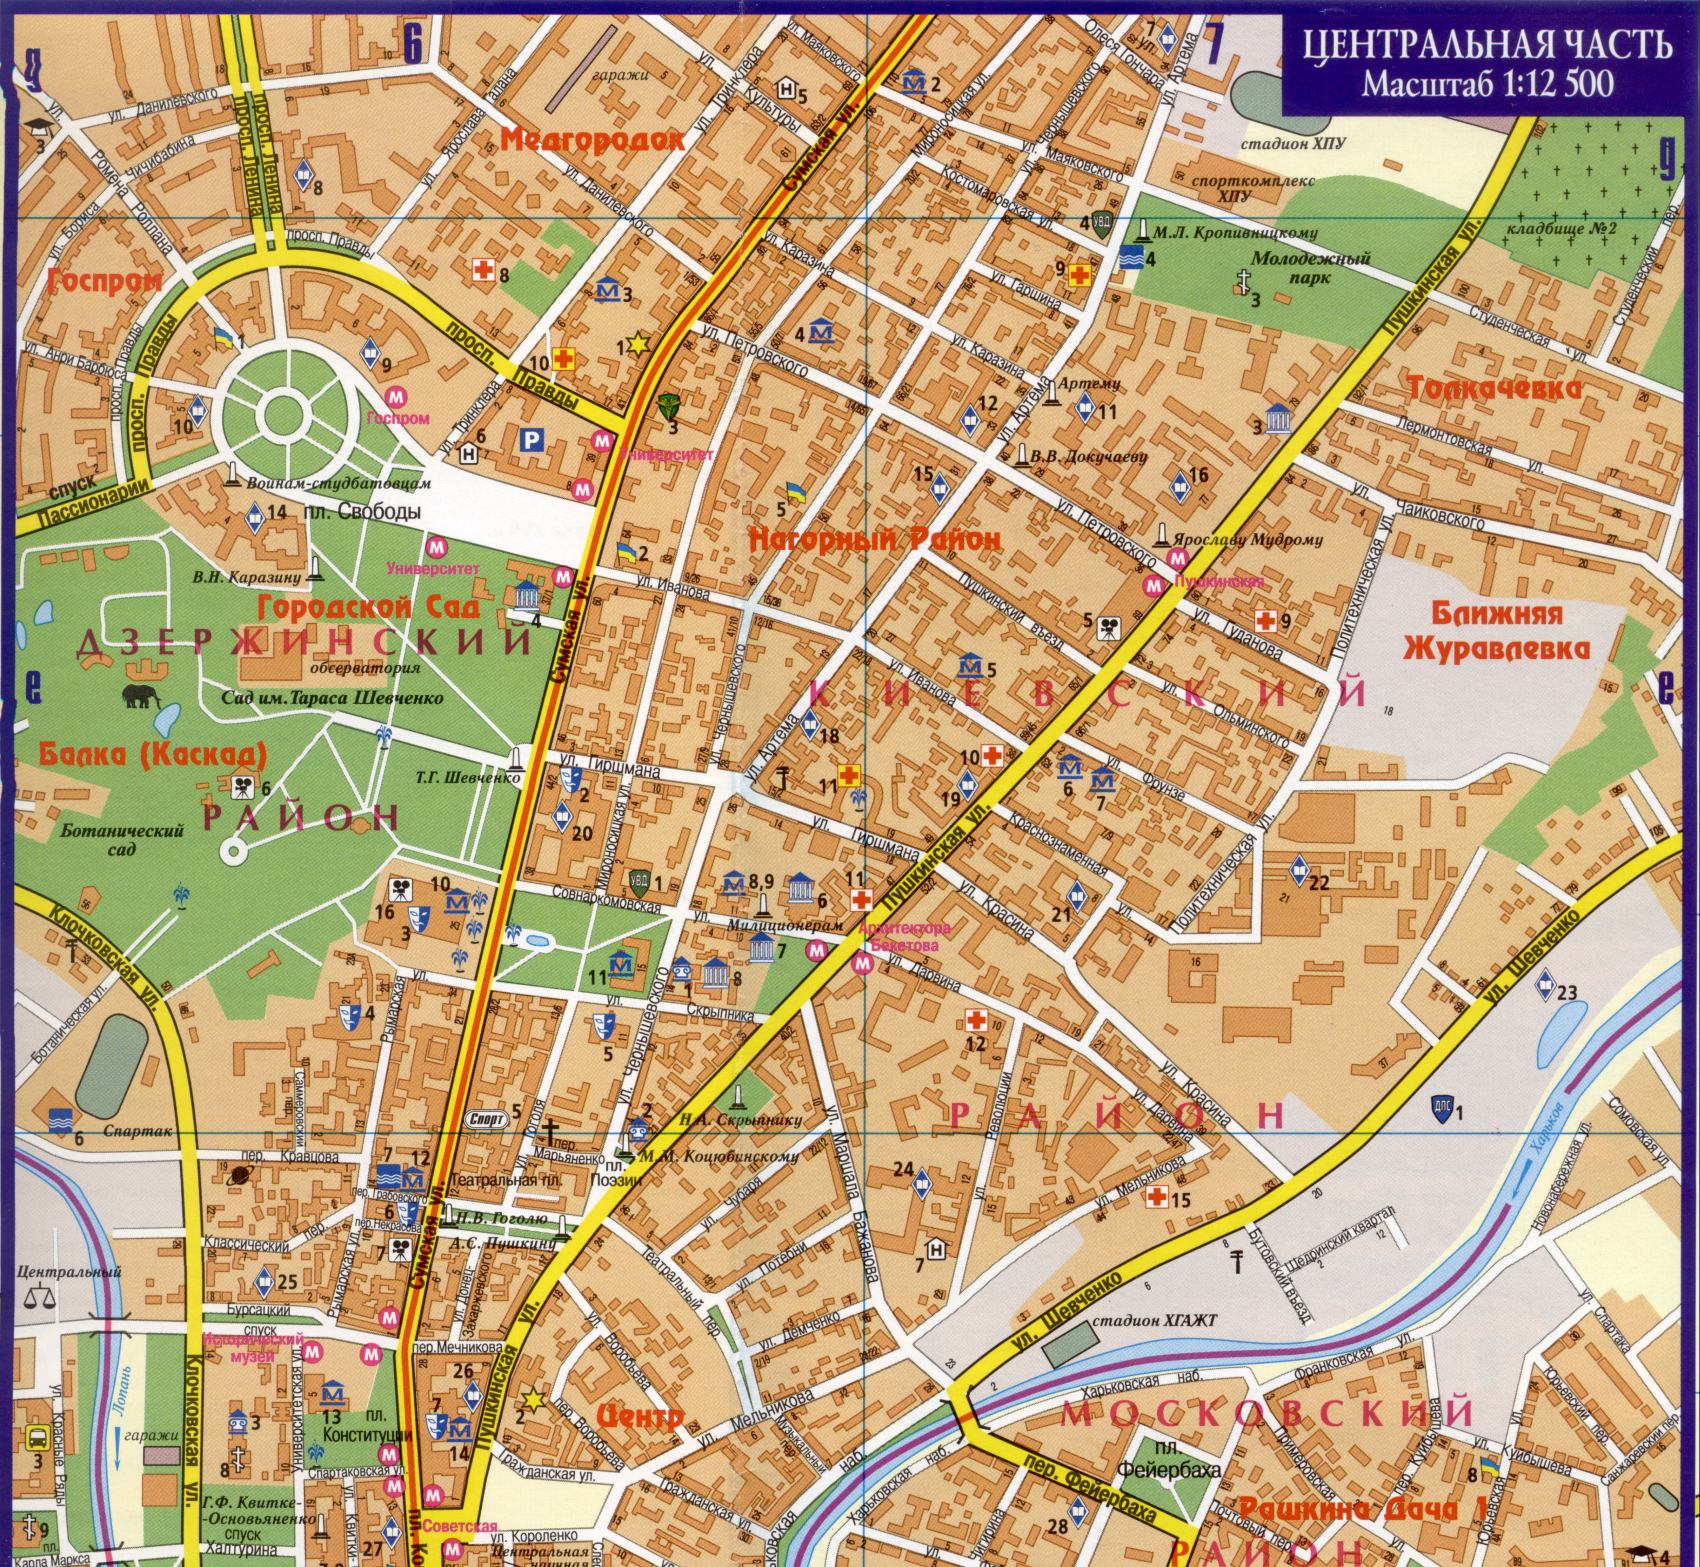 Map of Kharkiv - detailed map of the city center of Kharkiv